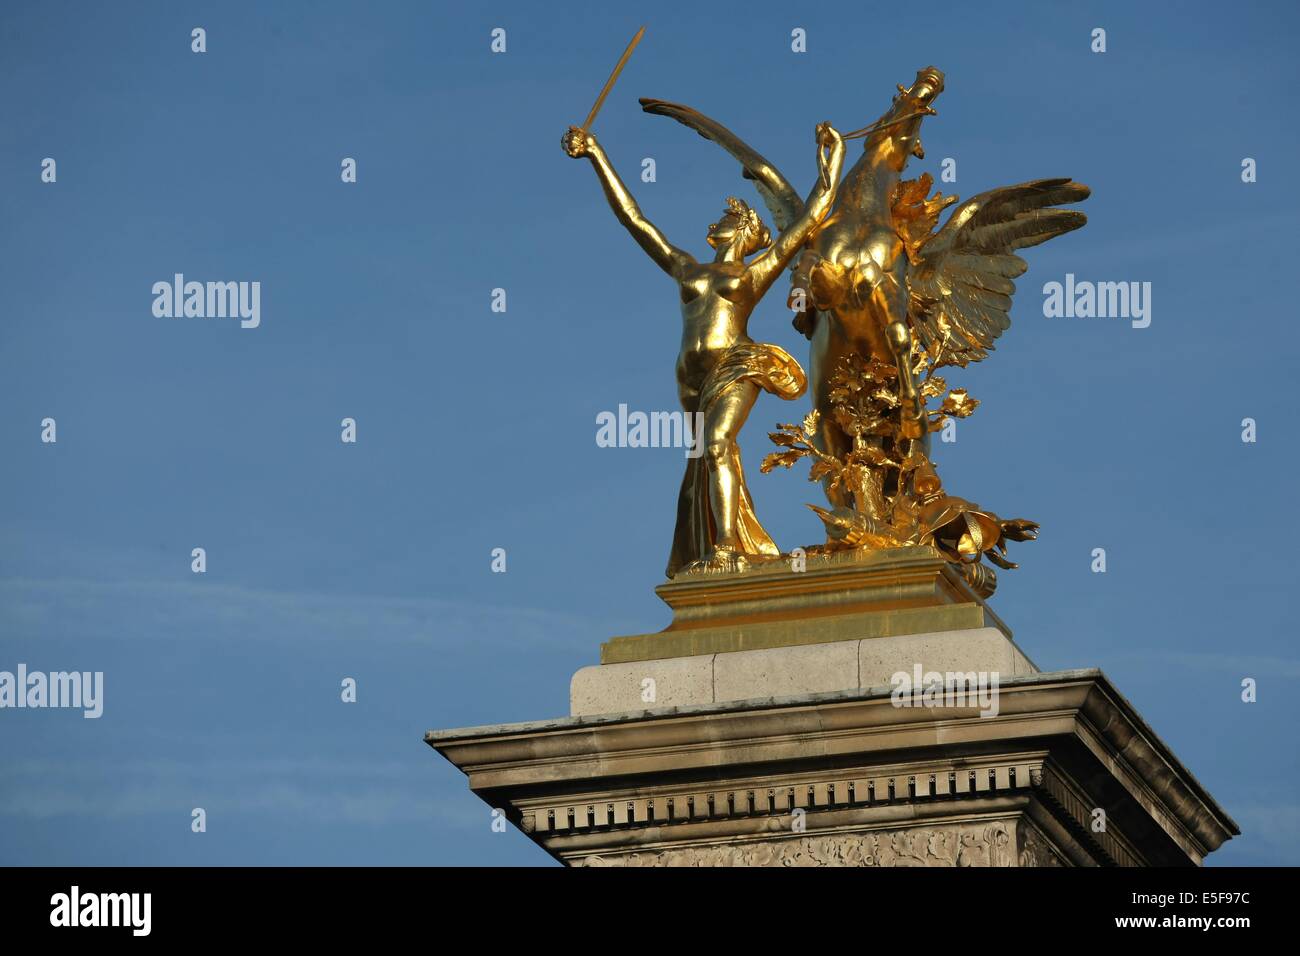 France, ile de france, paris 7e-16e arrondissement, pont alexandre III, seine, sculpture, statue, renommee, Stock Photo